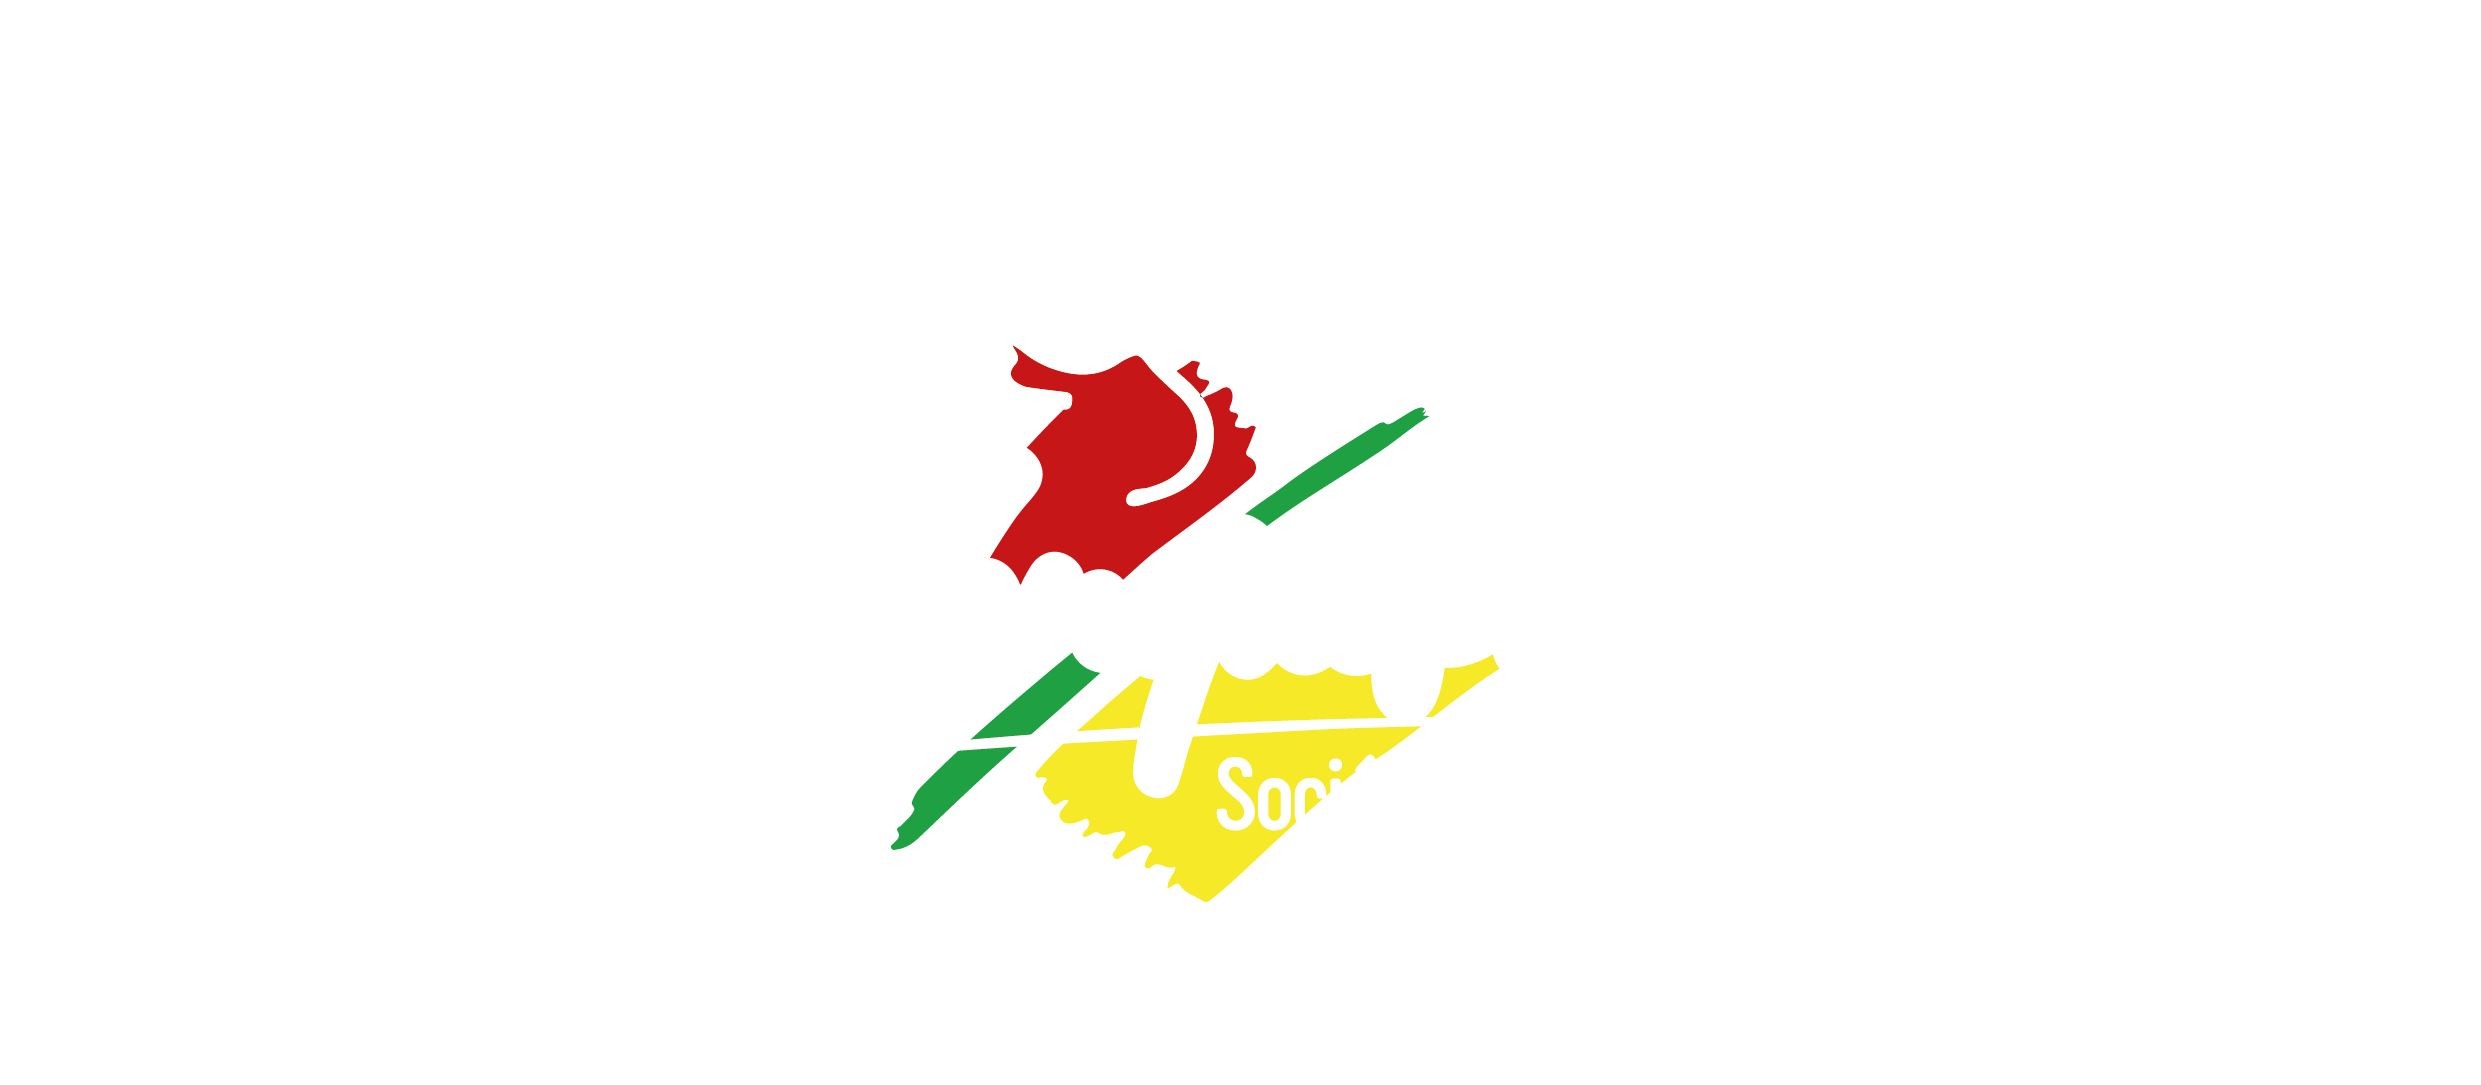 SOCIÉTÉ HIPPIQUE DE BLANQUEFORT